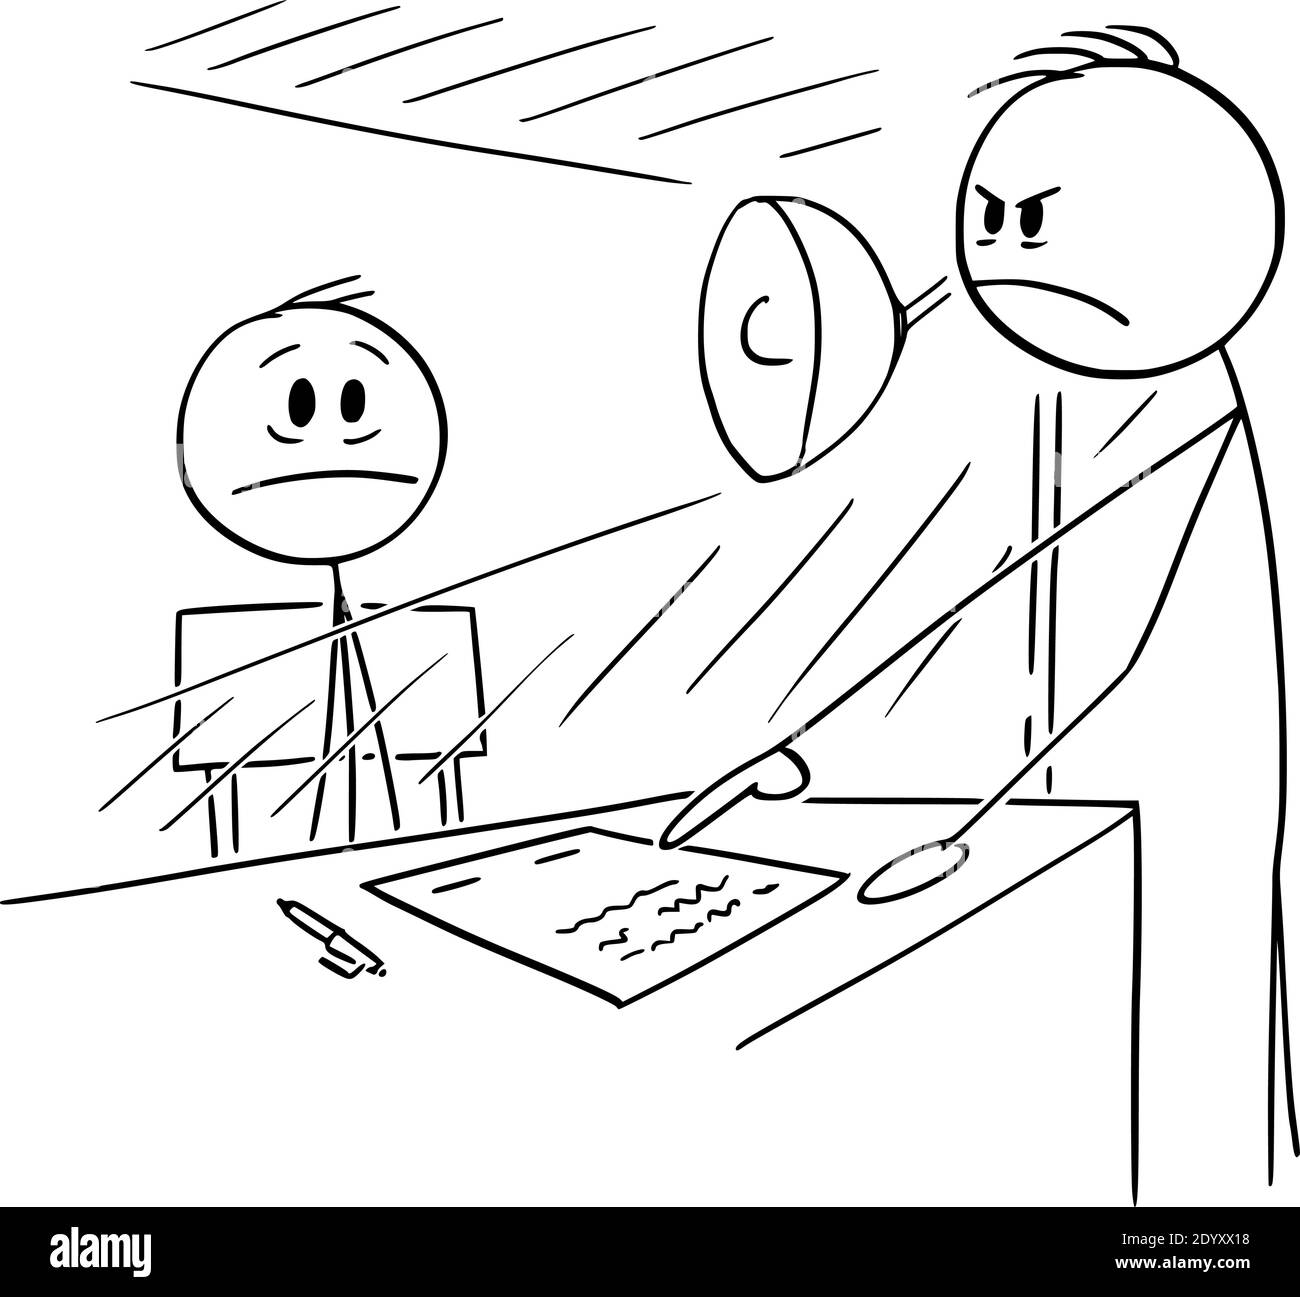 Vektor Cartoon Stick Figur Illustration des Mannes sitzt im Verhör Zimmer gezwungen, Kontakt oder Geständnis zu unterzeichnen. Stock Vektor